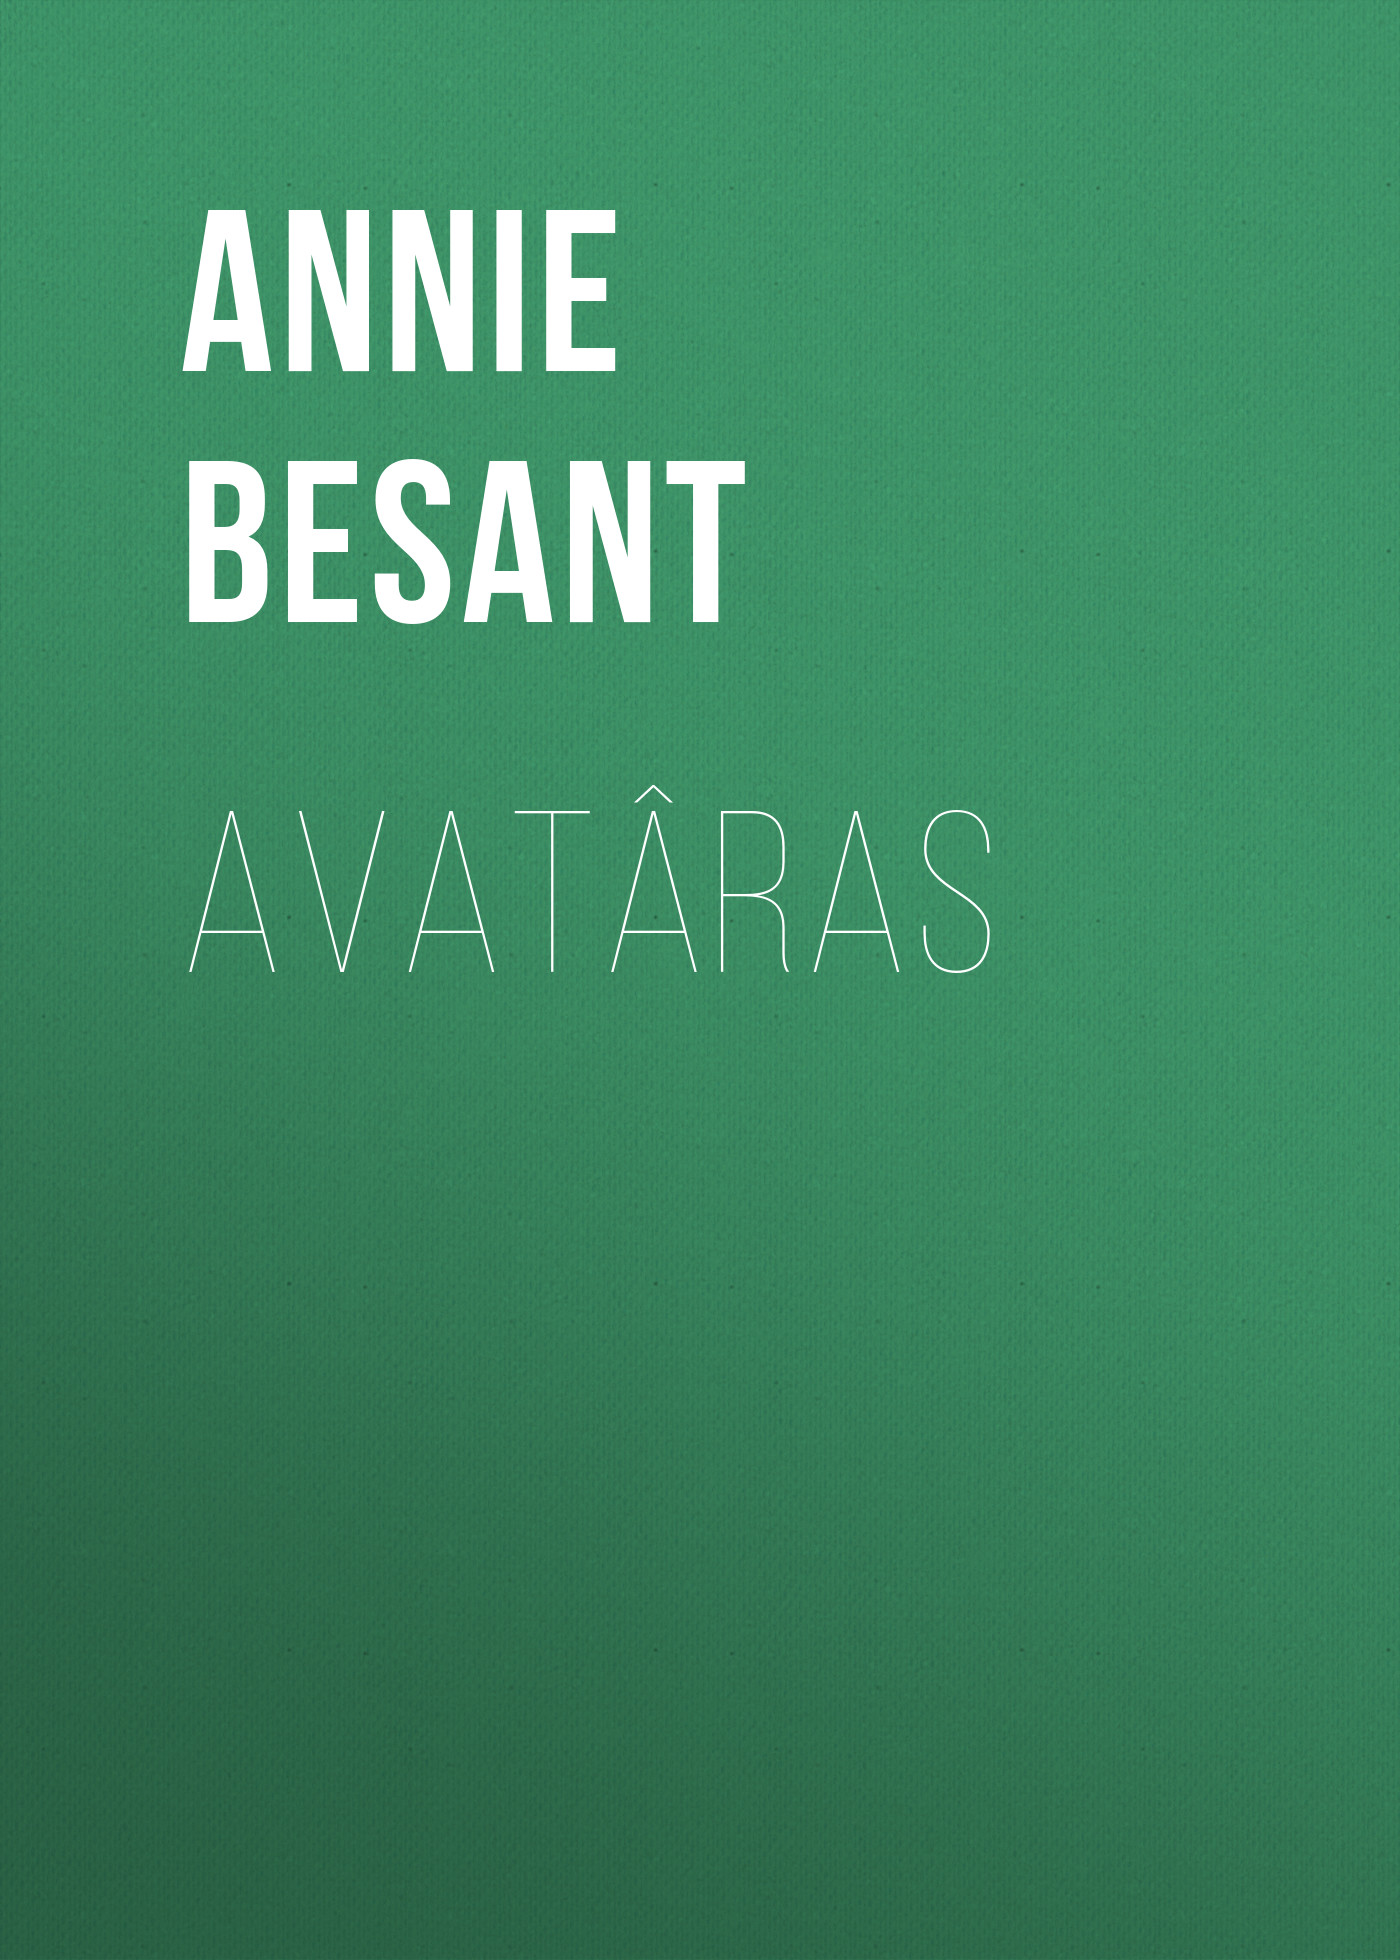 Книга Avatâras из серии , созданная Annie Besant, может относится к жанру Зарубежная старинная литература, Зарубежная классика. Стоимость электронной книги Avatâras с идентификатором 24174500 составляет 0.90 руб.